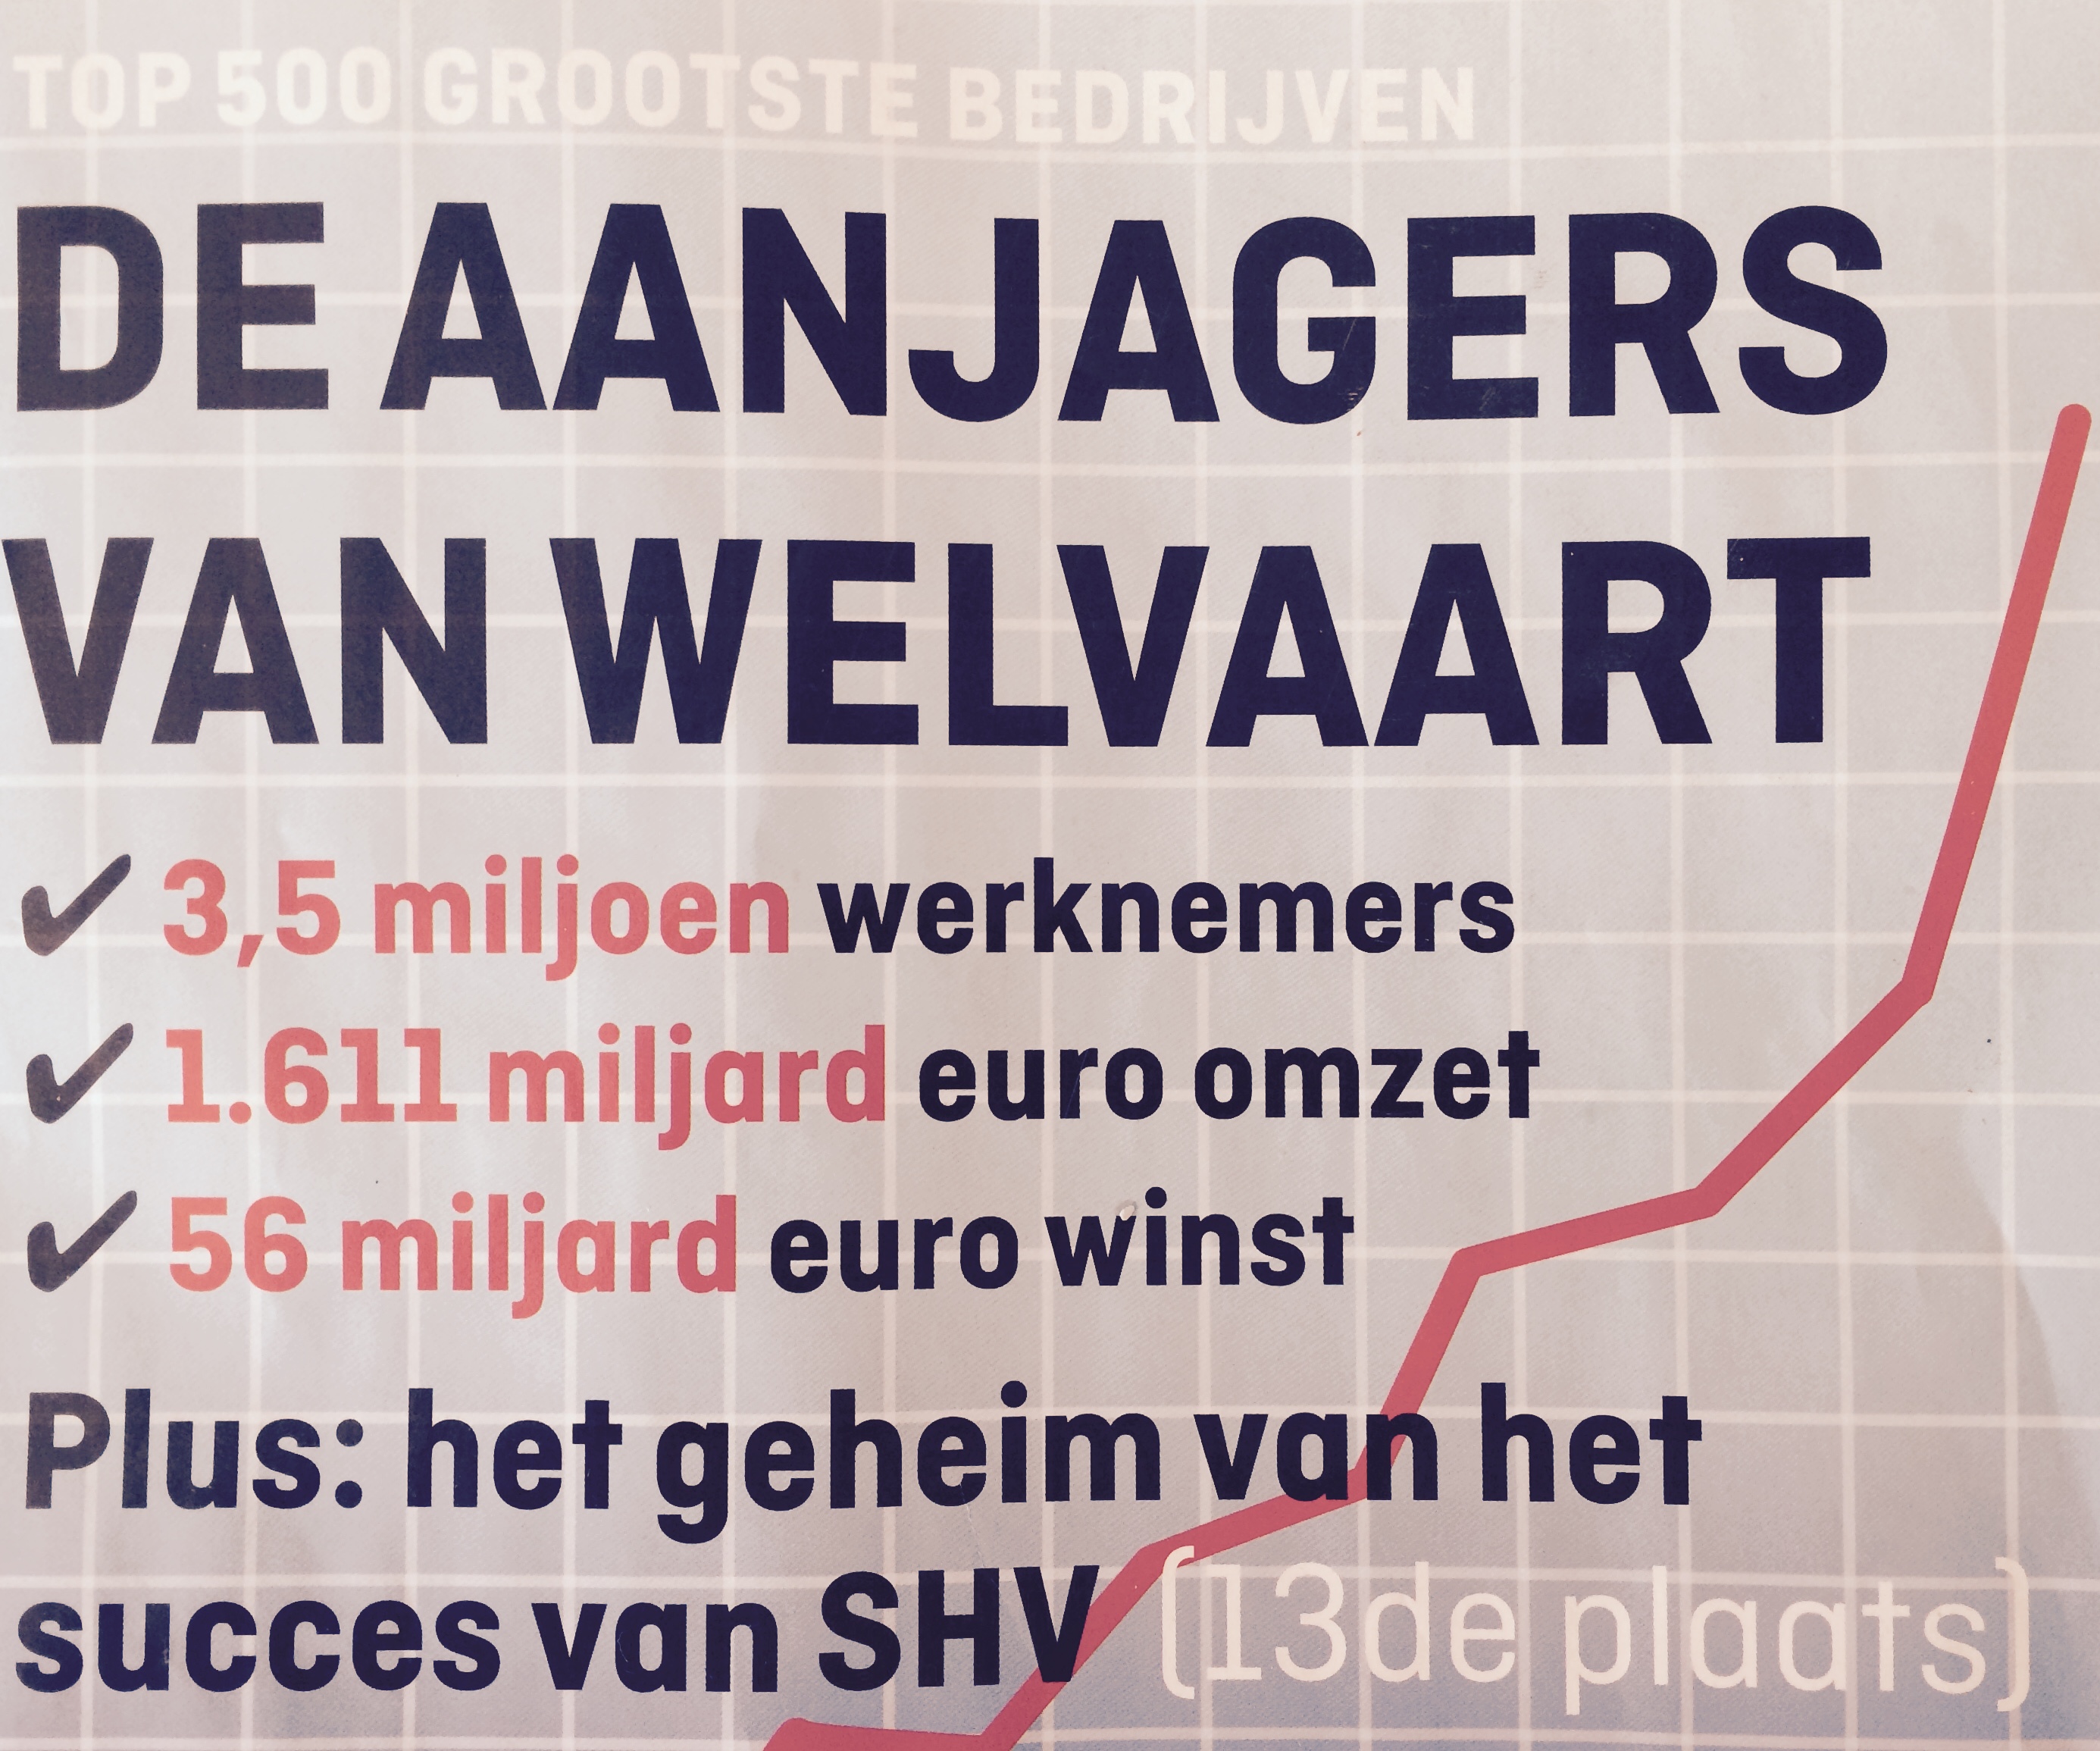 Rusteloos Empirisch Oprechtheid Top 500 grootste bedrijven aanjagers van Nederlandse economie? - Koneksa  Mondo